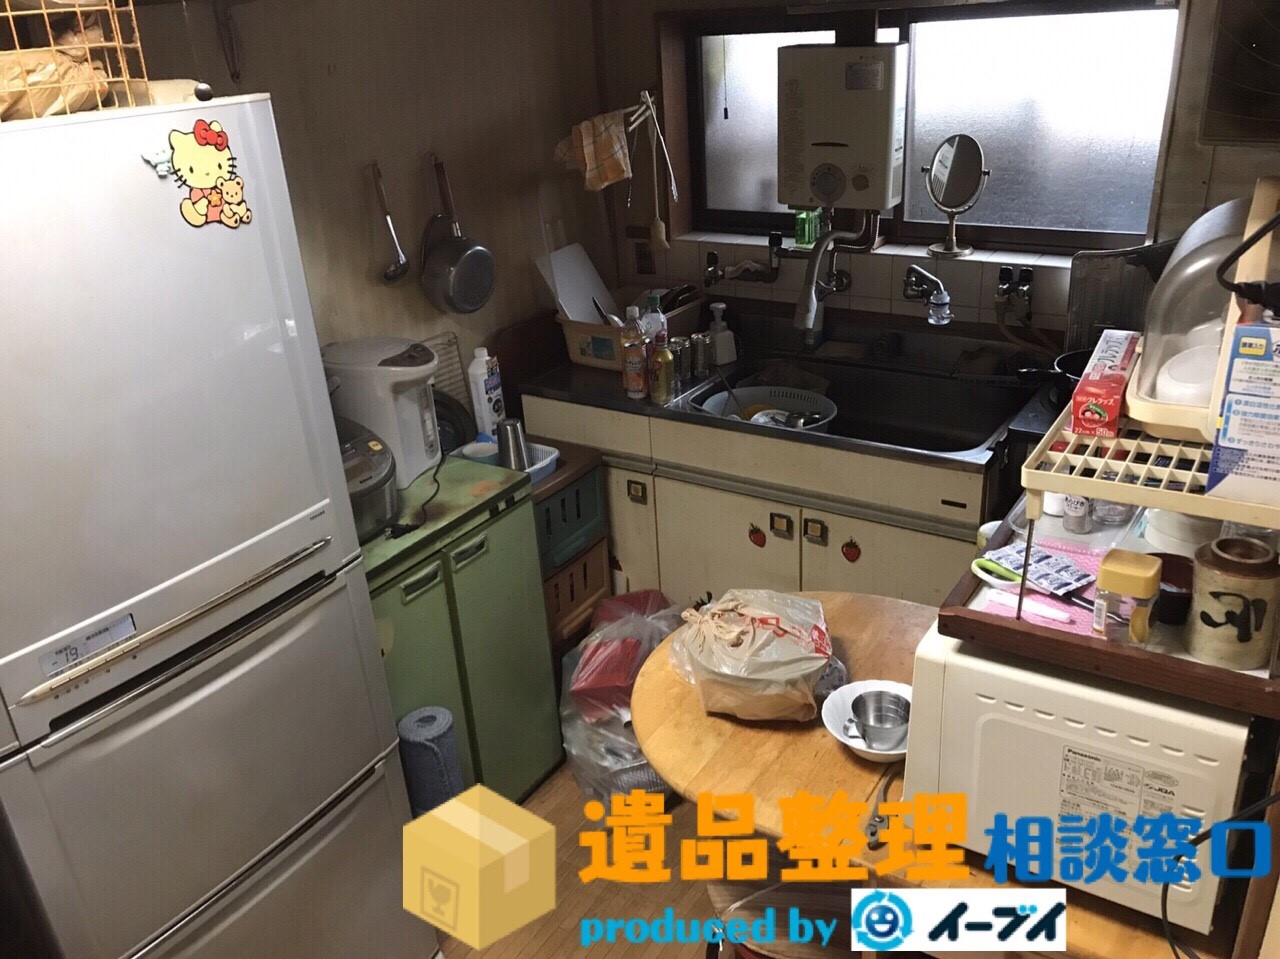 奈良県御所市で遺品整理に伴う家財道具処分をしました。のアイキャッチ